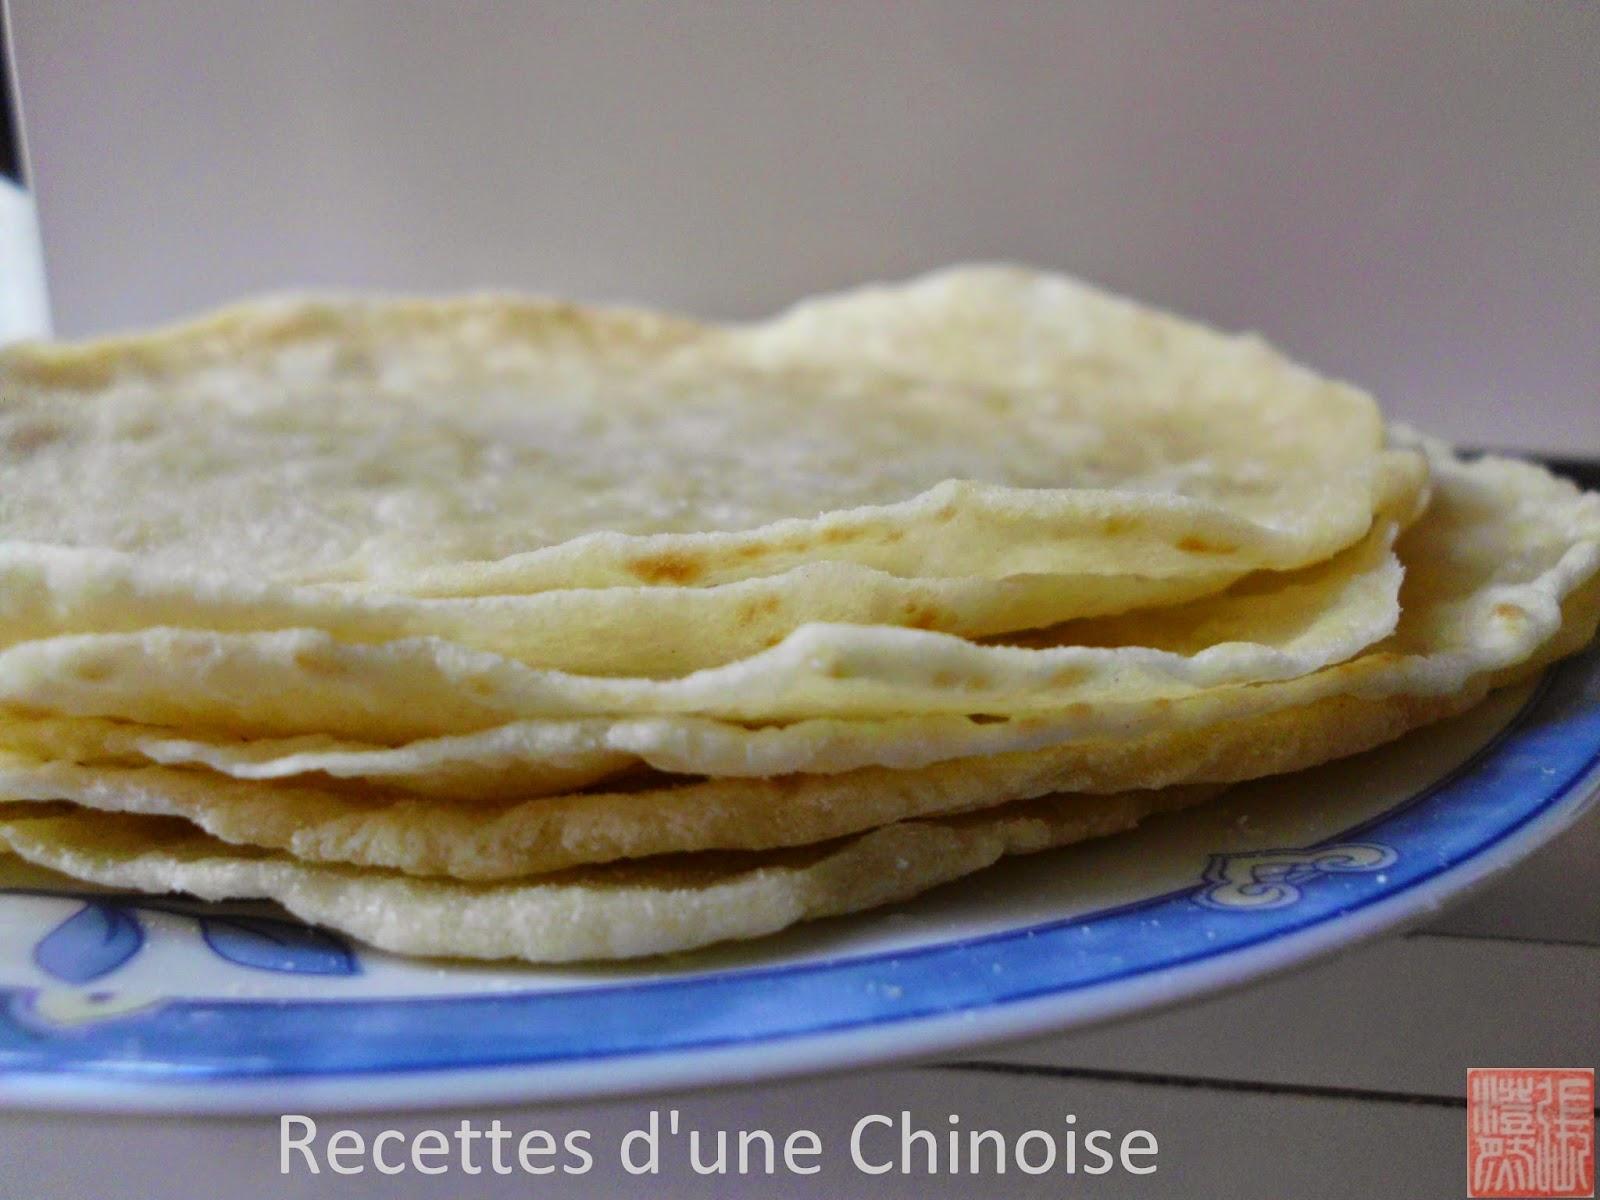 Bite the spring with chun bing : Crêpes de printemps 咬春的春饼 yǎochūn de chūn bǐng